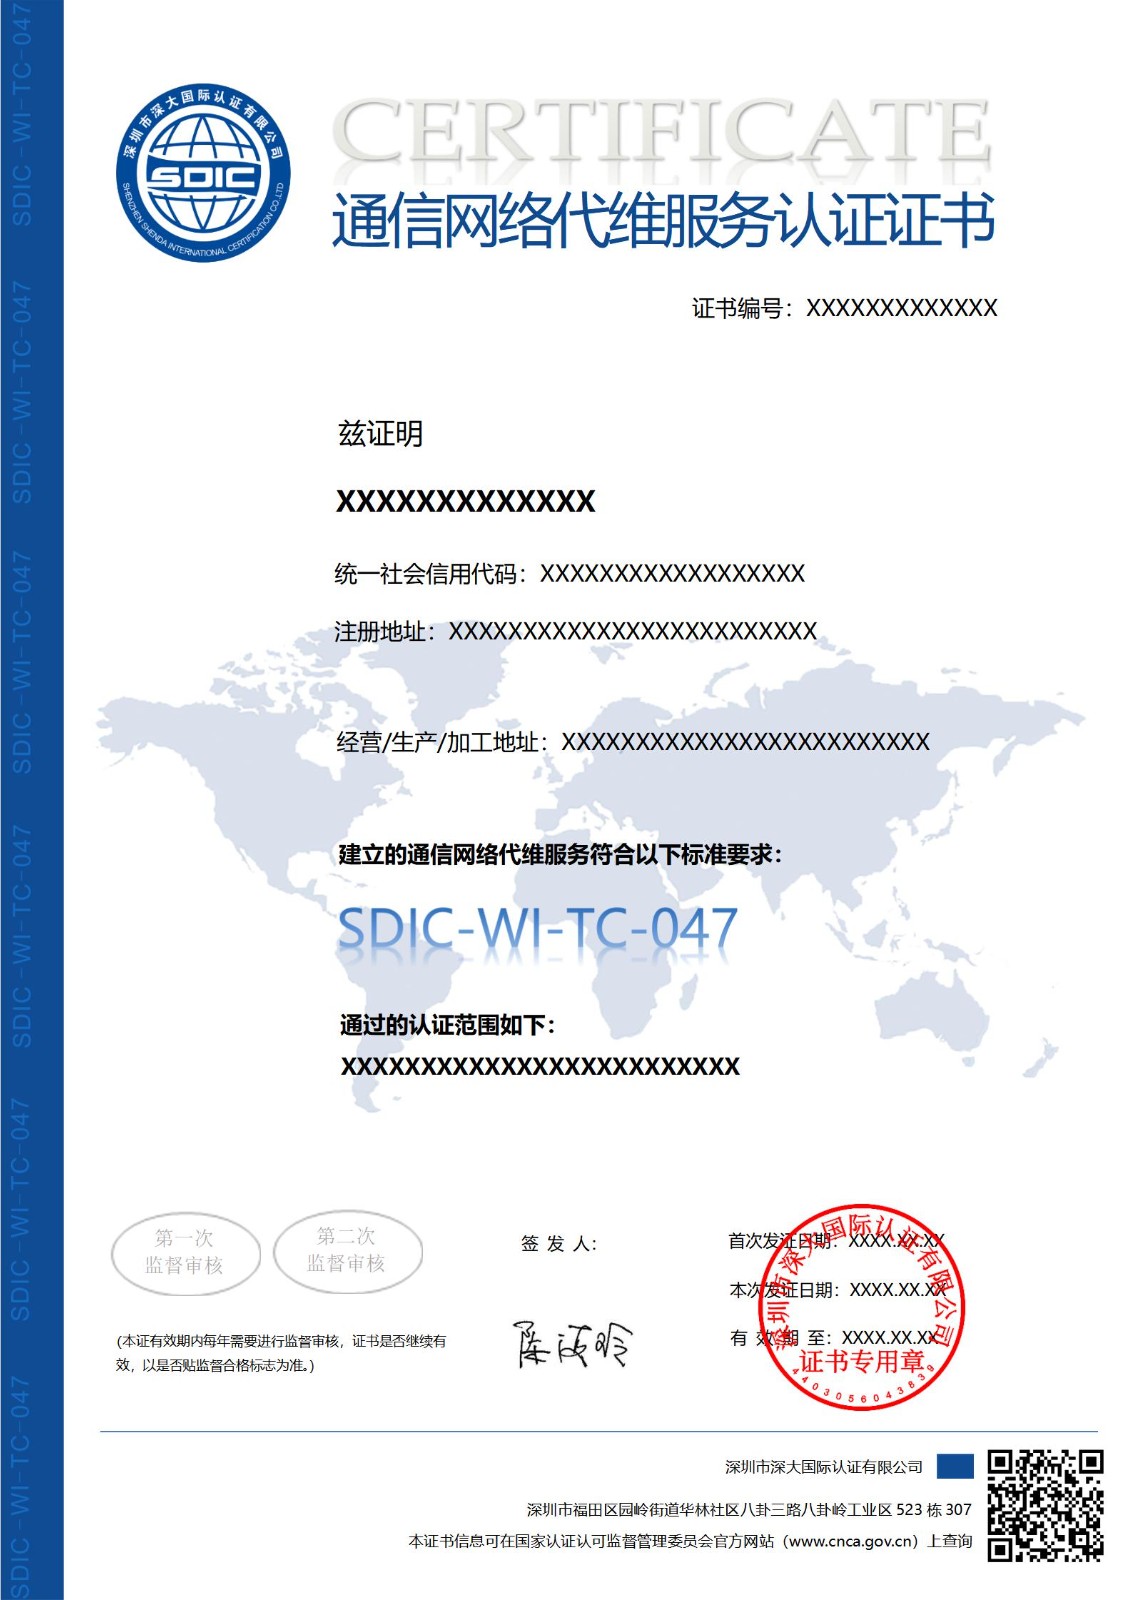 SDIC-WI-TC-047通信网络代维服务认证证书